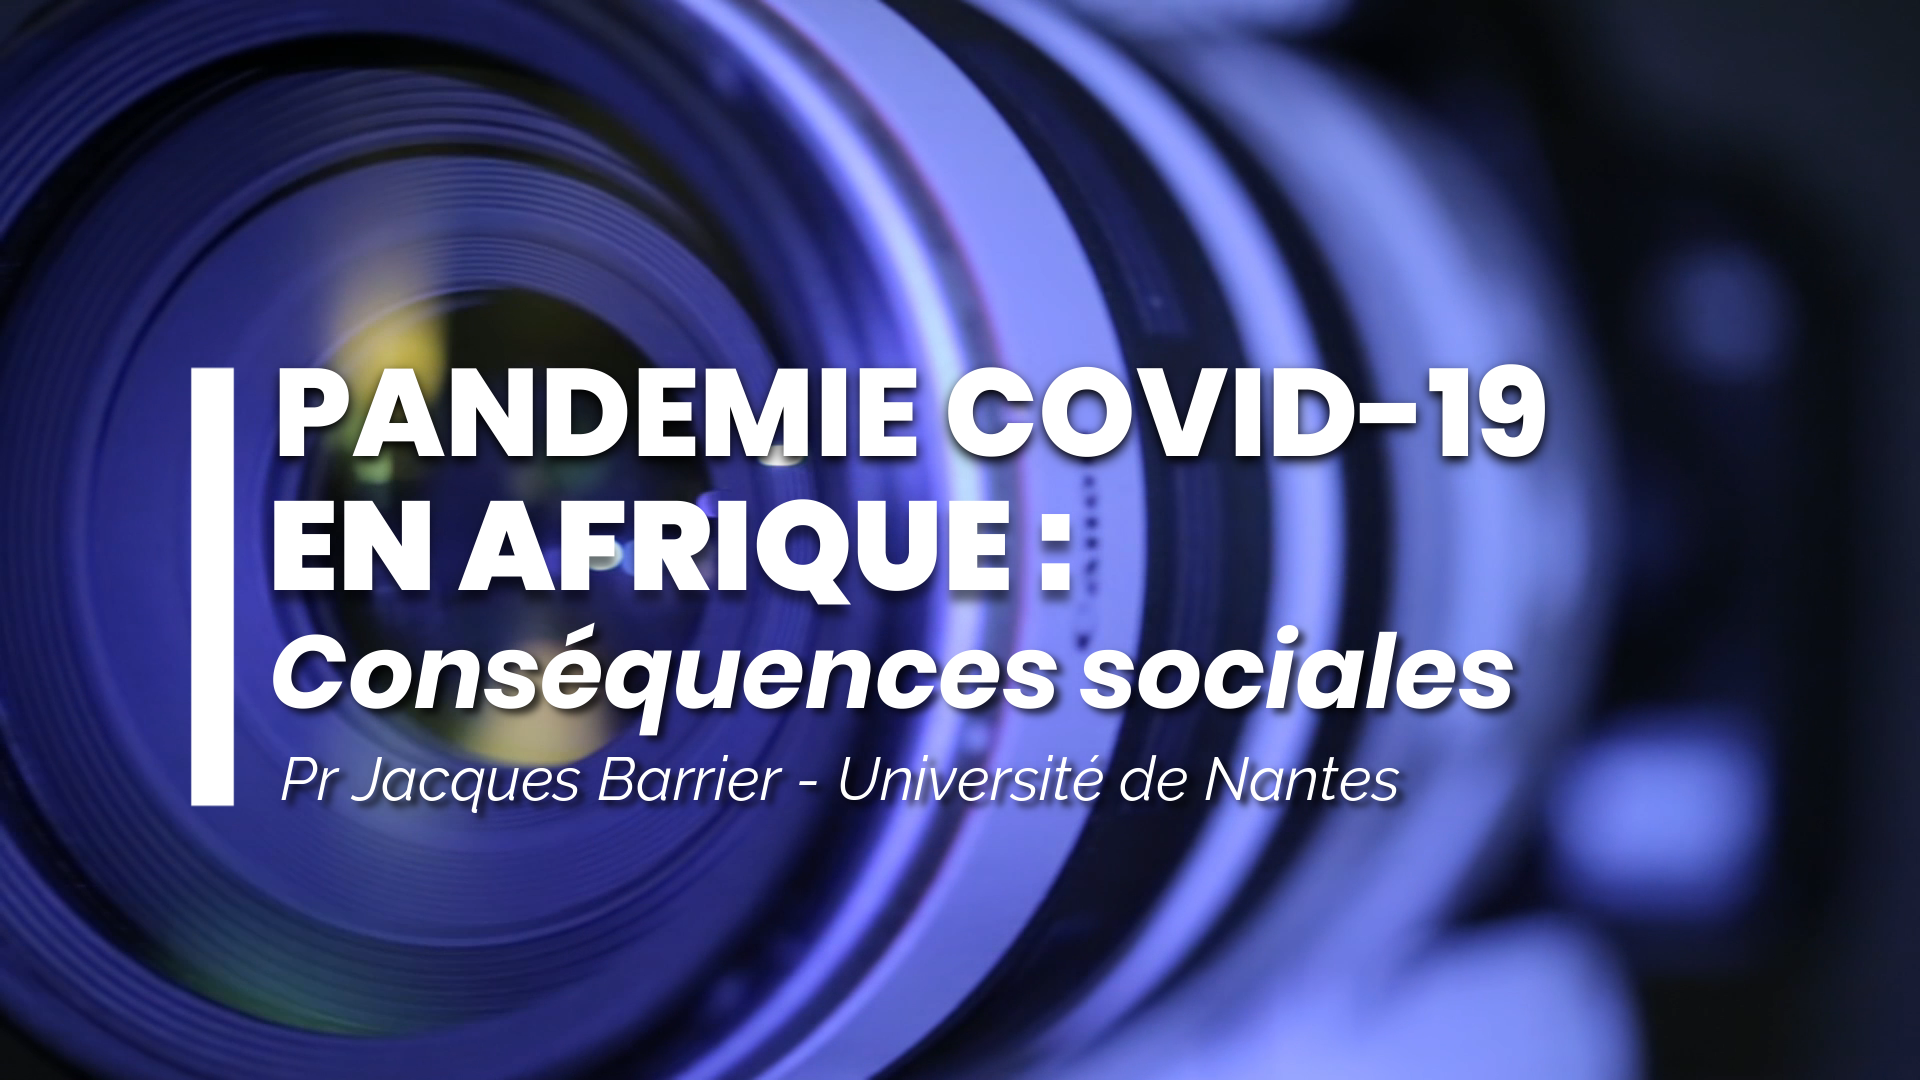 Pandémie COVID-19 en Afrique : conséquences sociales